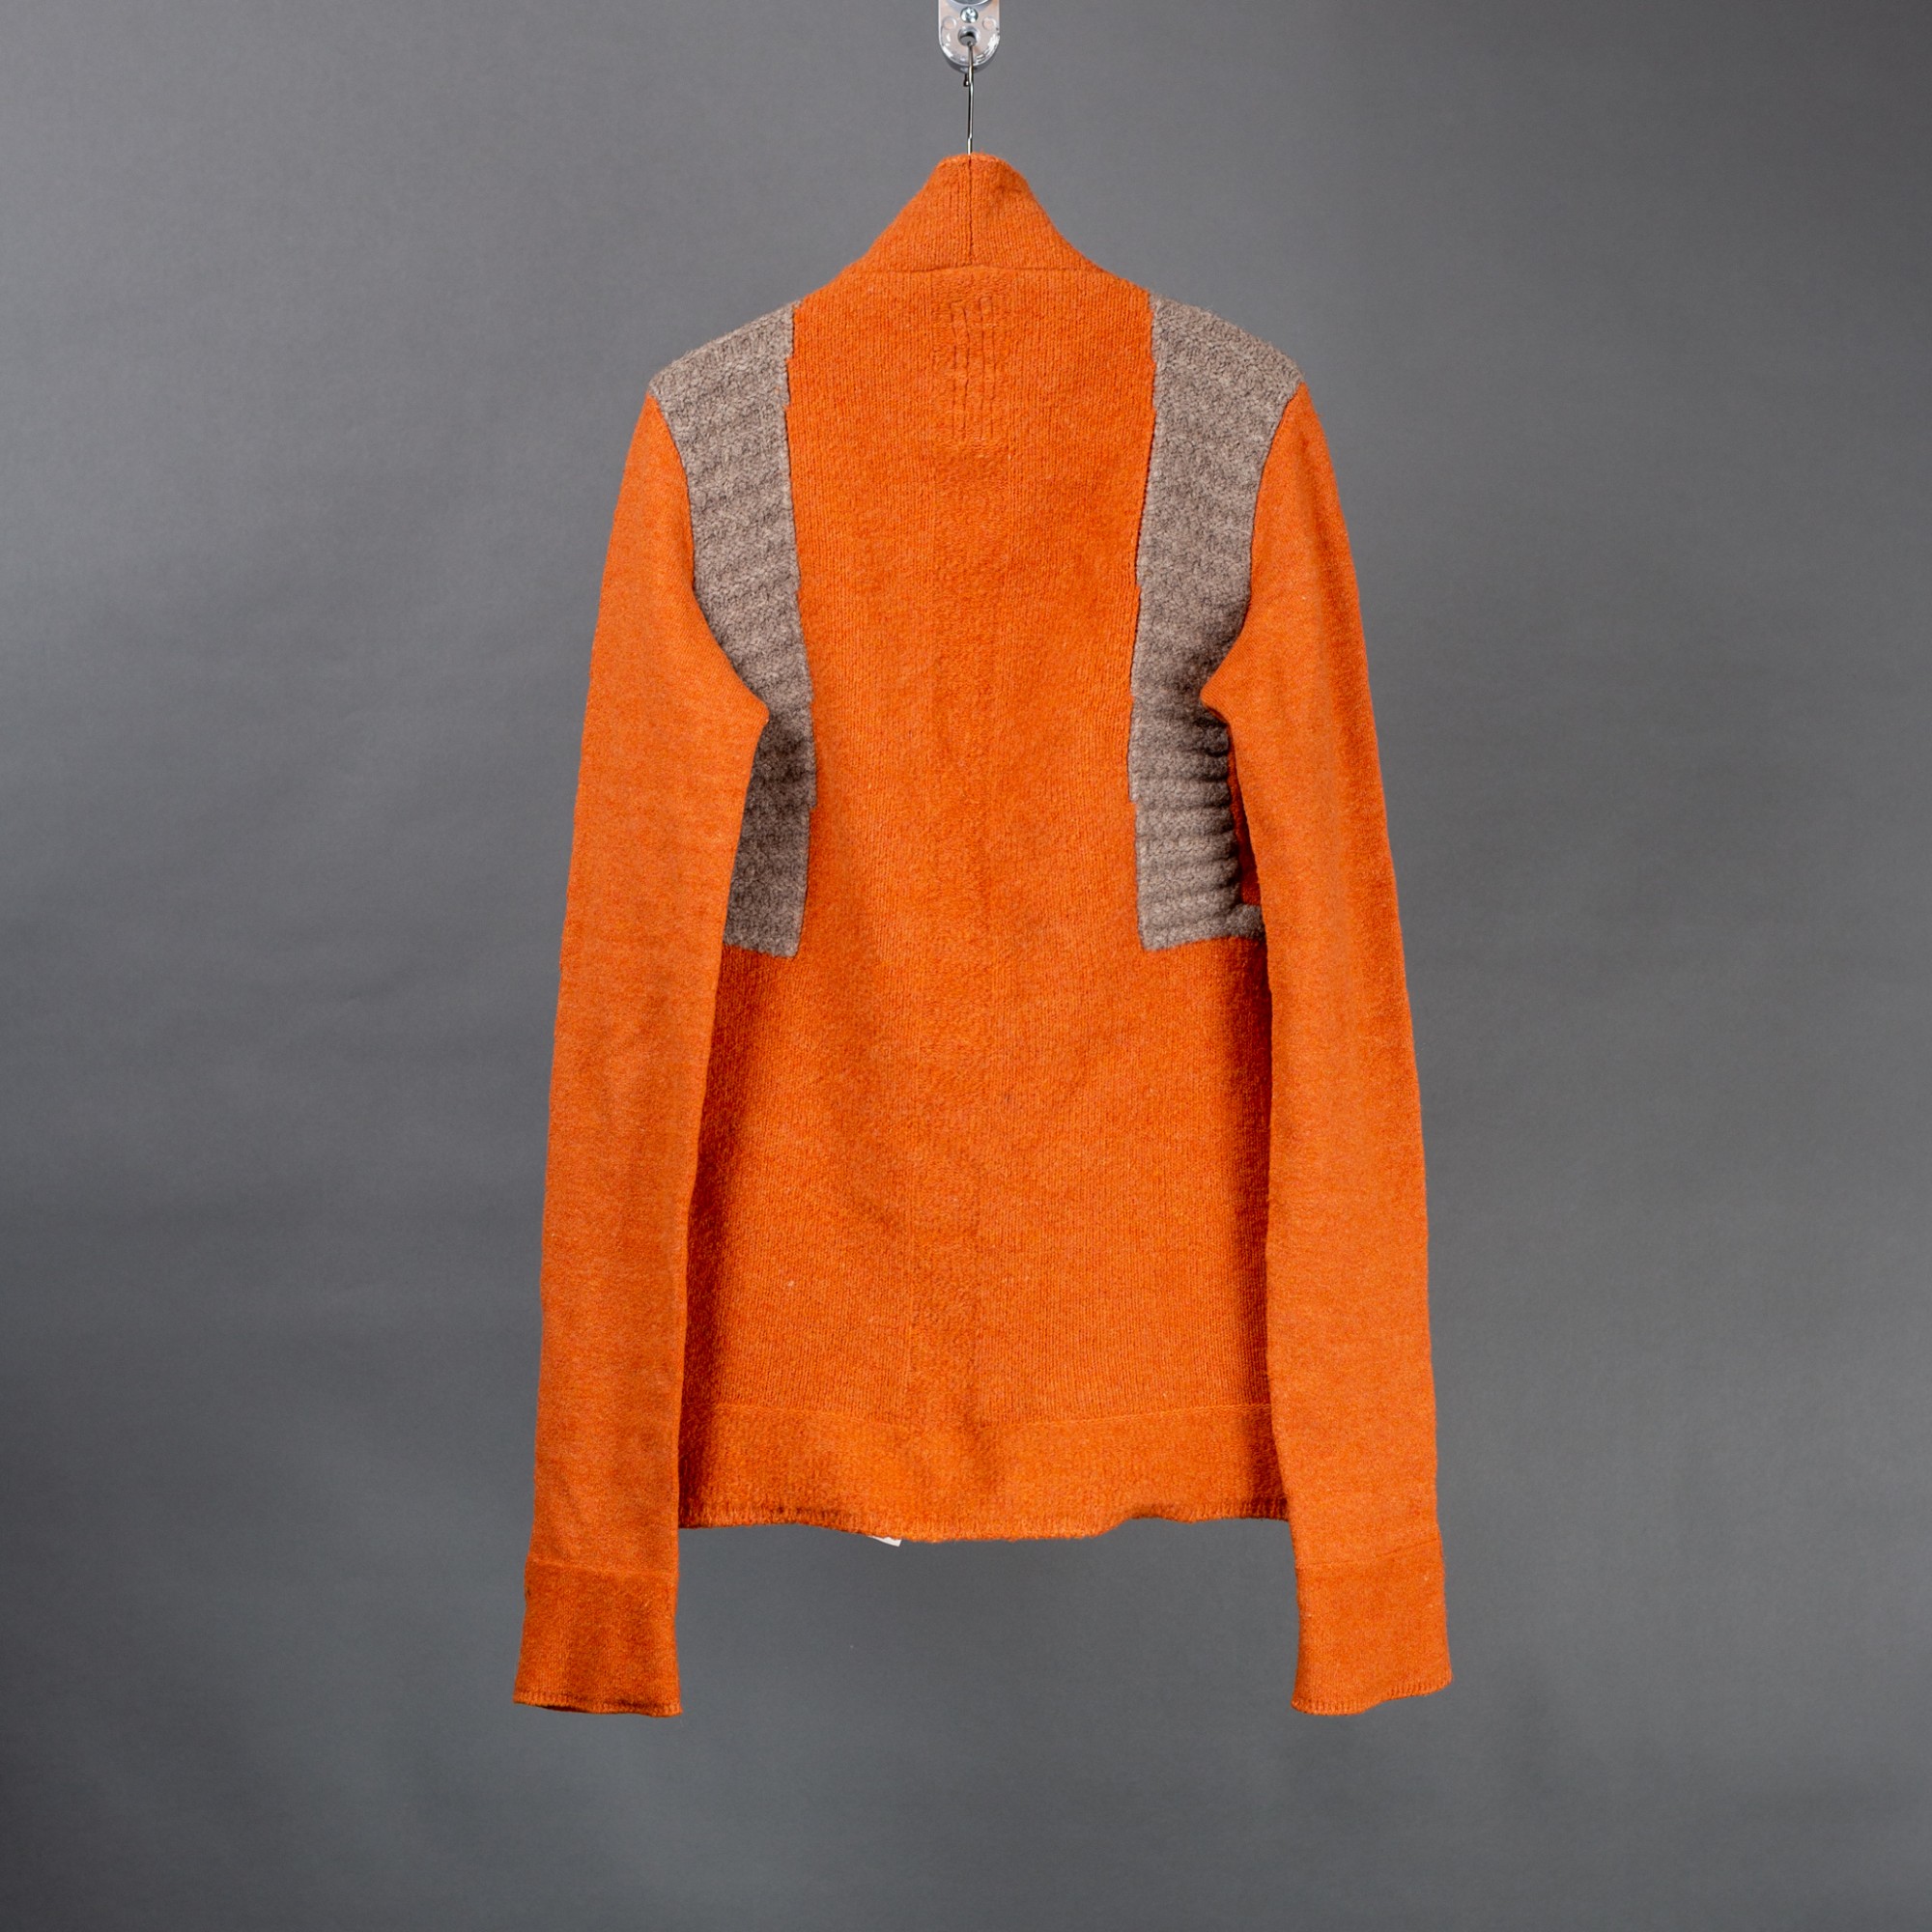 FW16 MASTODON Orange Yak Sweater